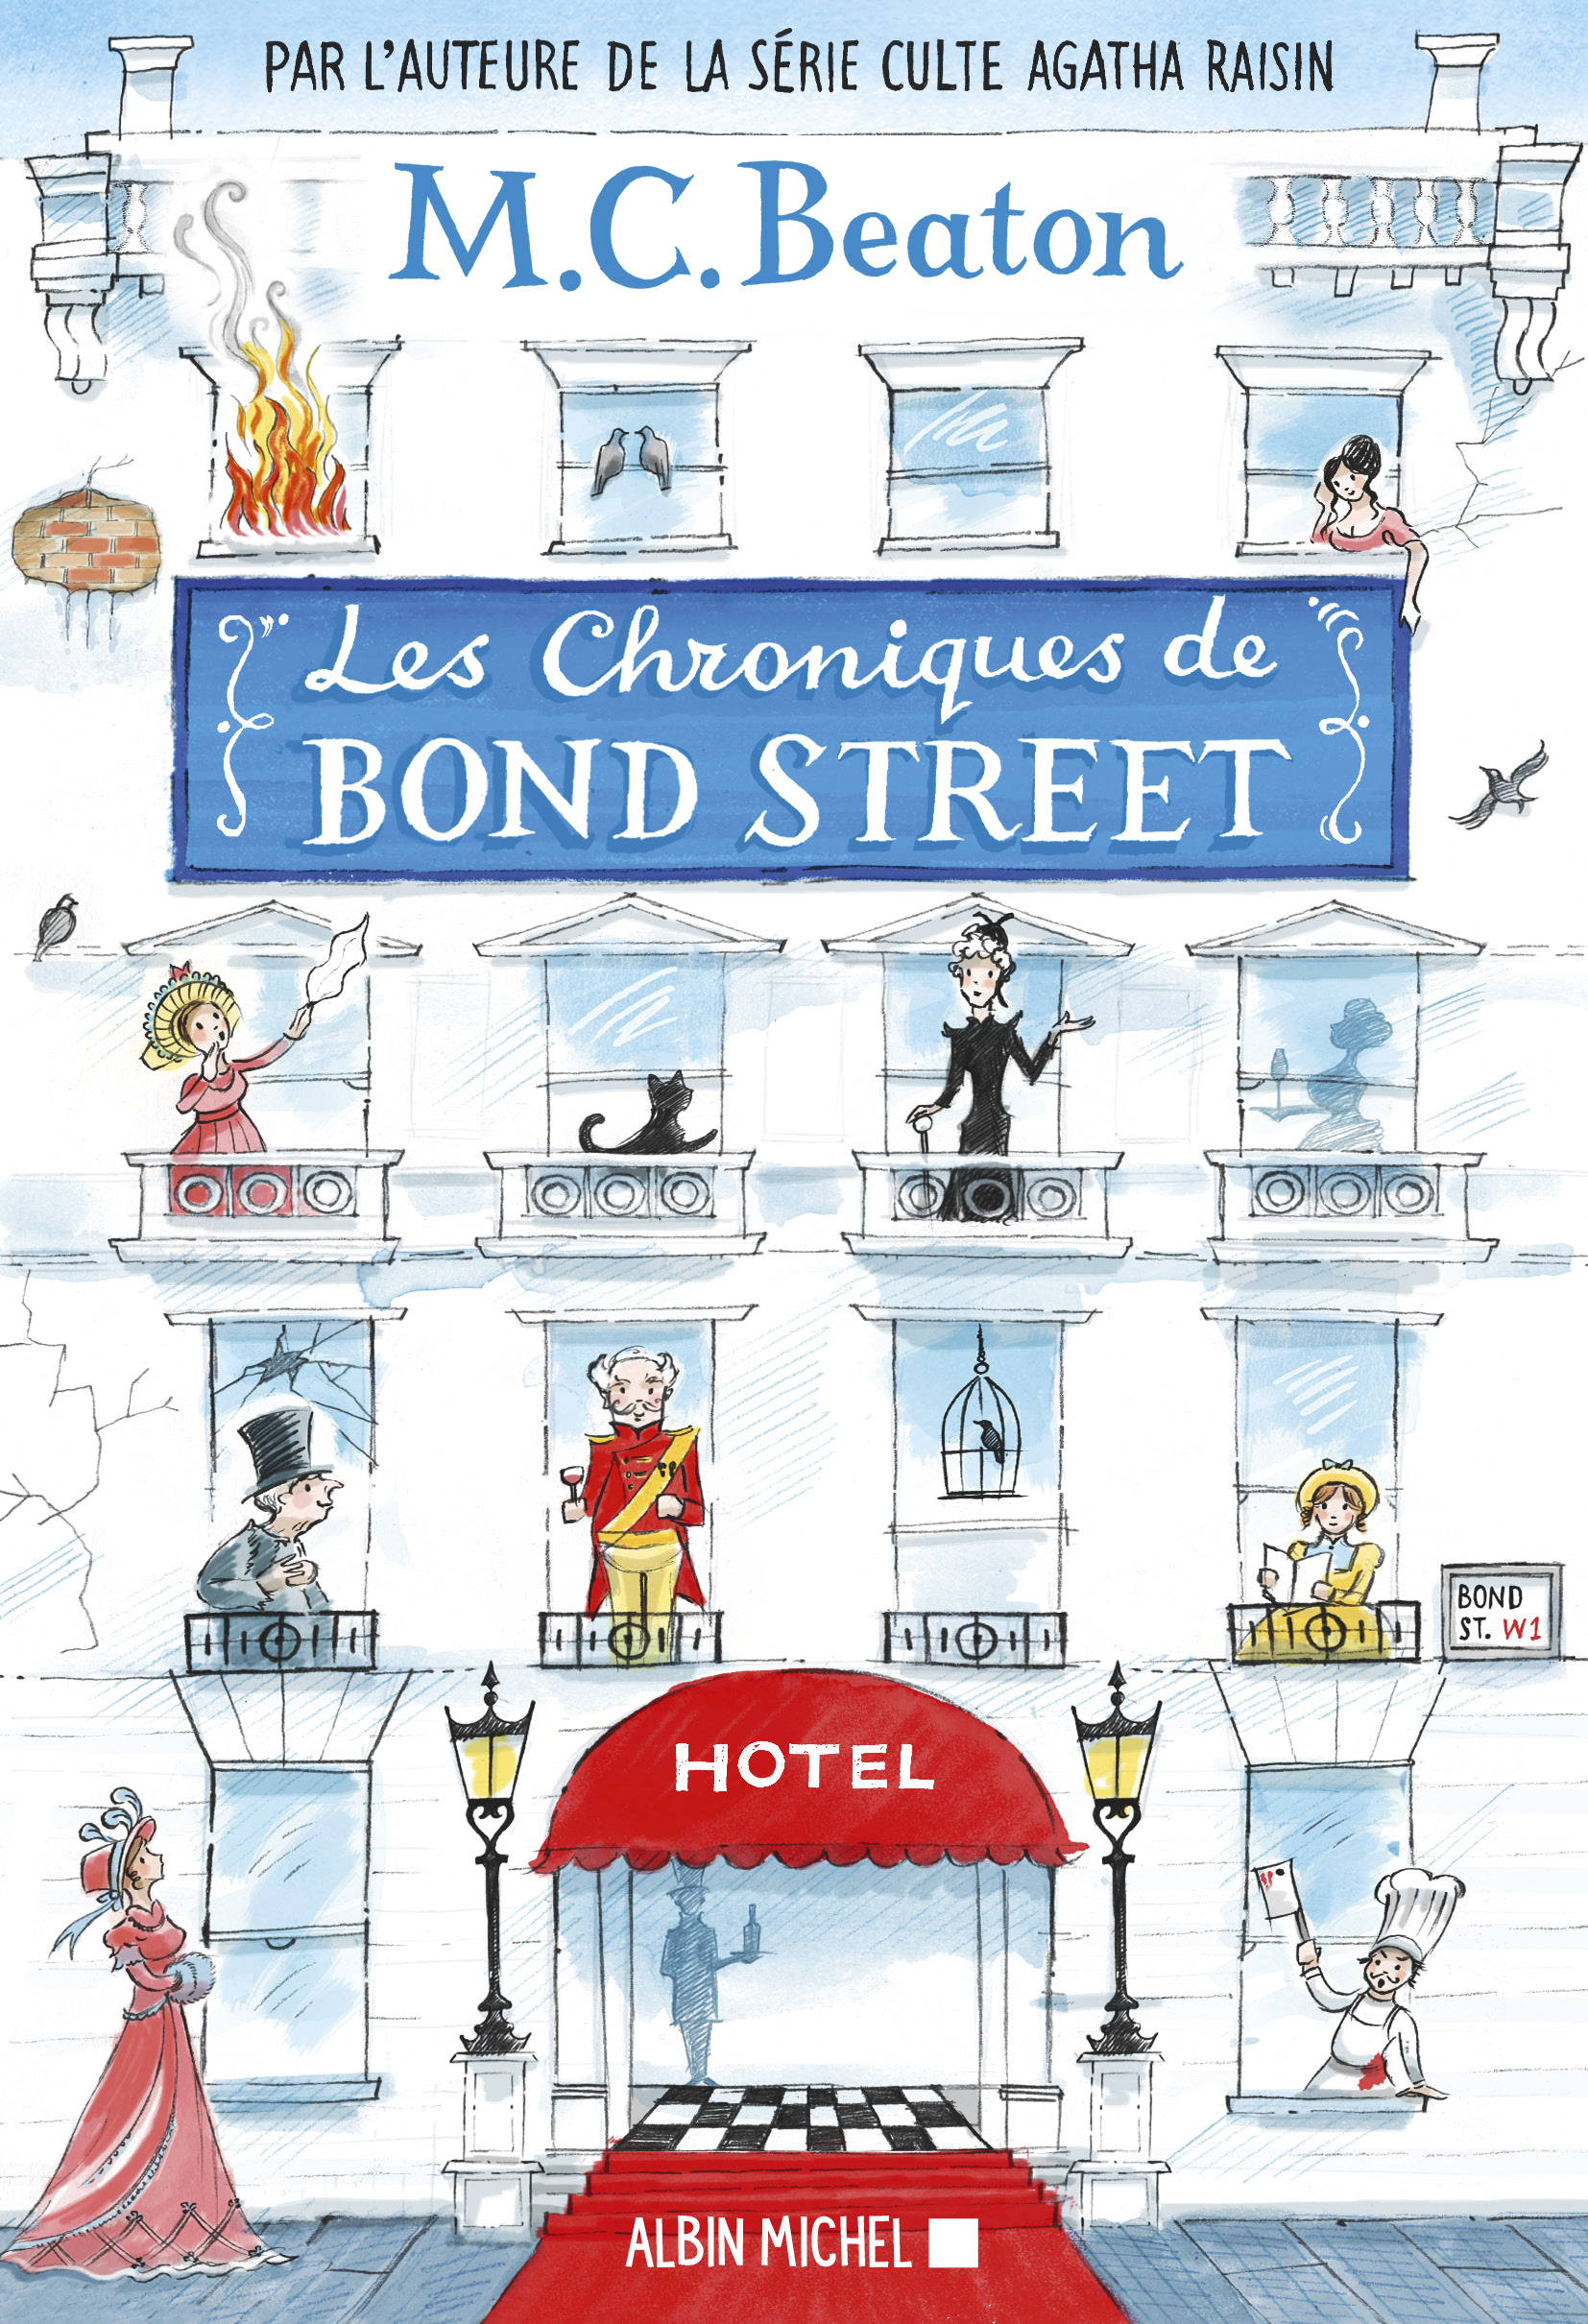 Couverture du livre Les Chroniques de Bond Street - tome 1